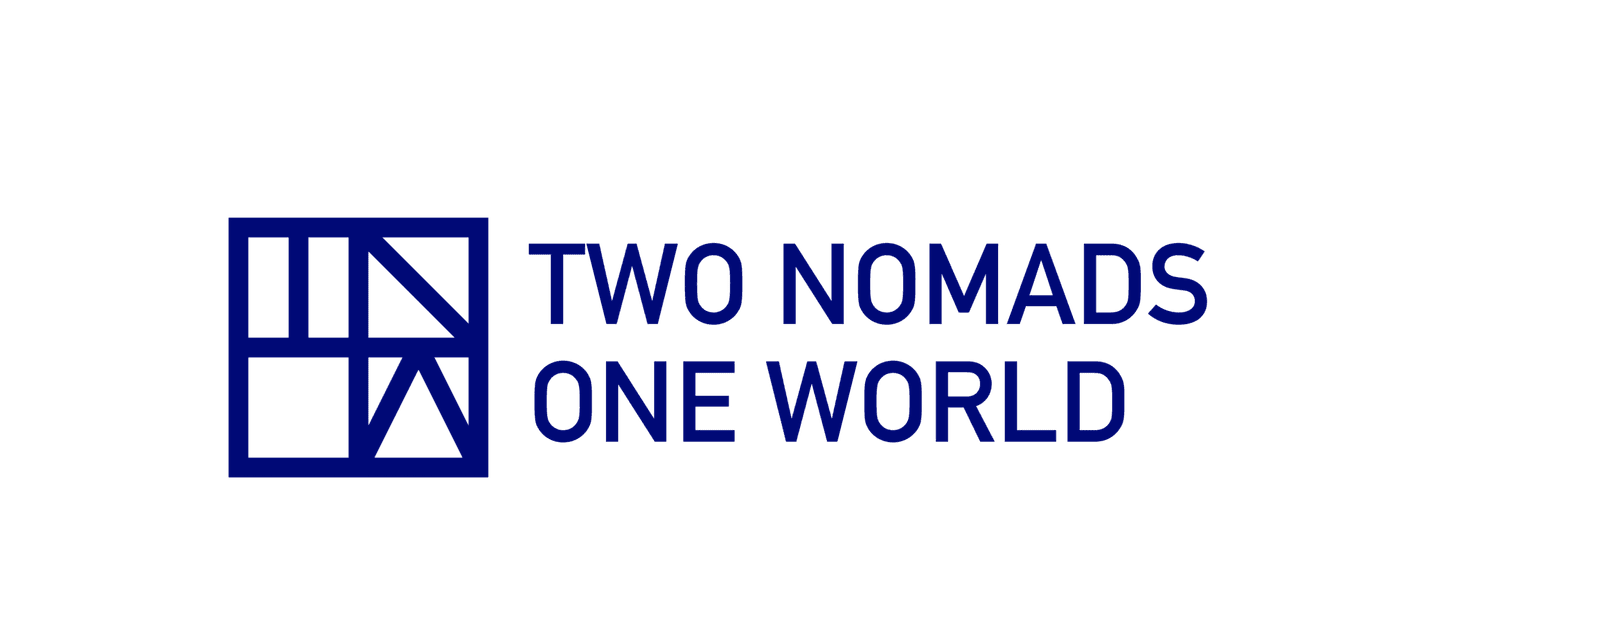 Two Nomads One World | Halkidiki | Two Nomads One World